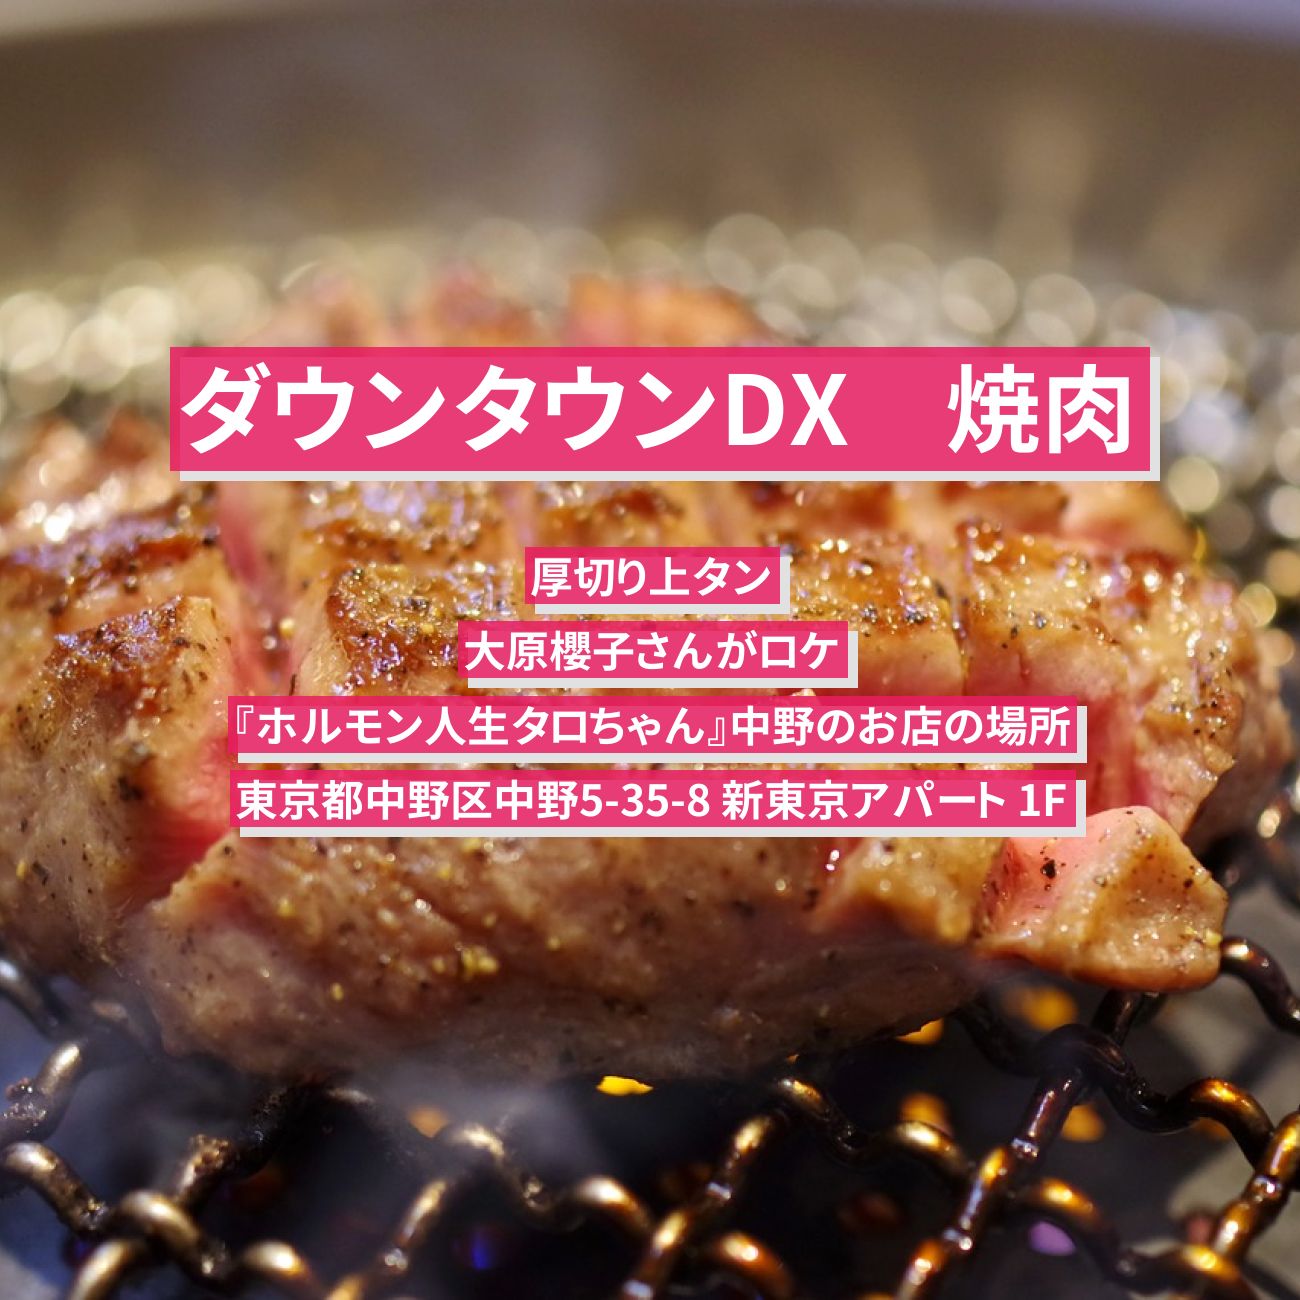 【ダウンタウンDX】焼肉（厚切り上タン）大原櫻子『ホルモン人生タロちゃん』中野のお店の場所